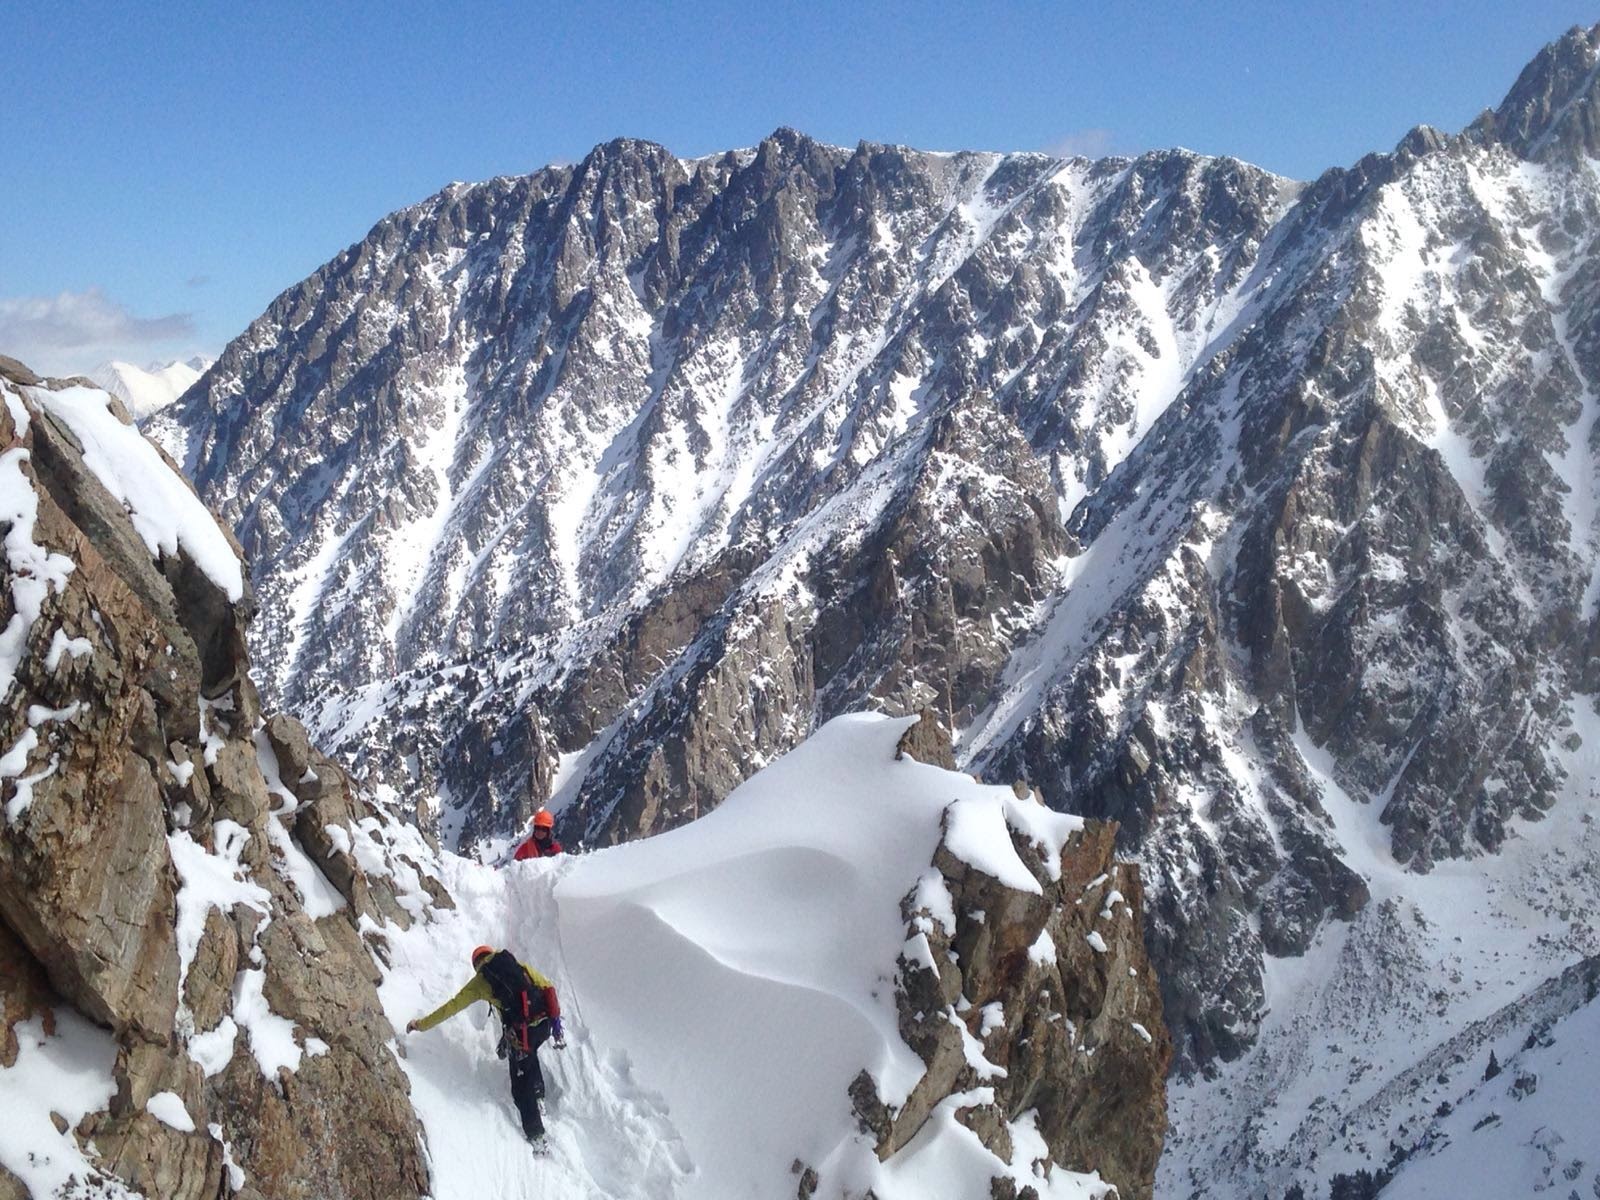 Esquí-alpinismo. Adrenalina, aventura y libertad en la nieve.